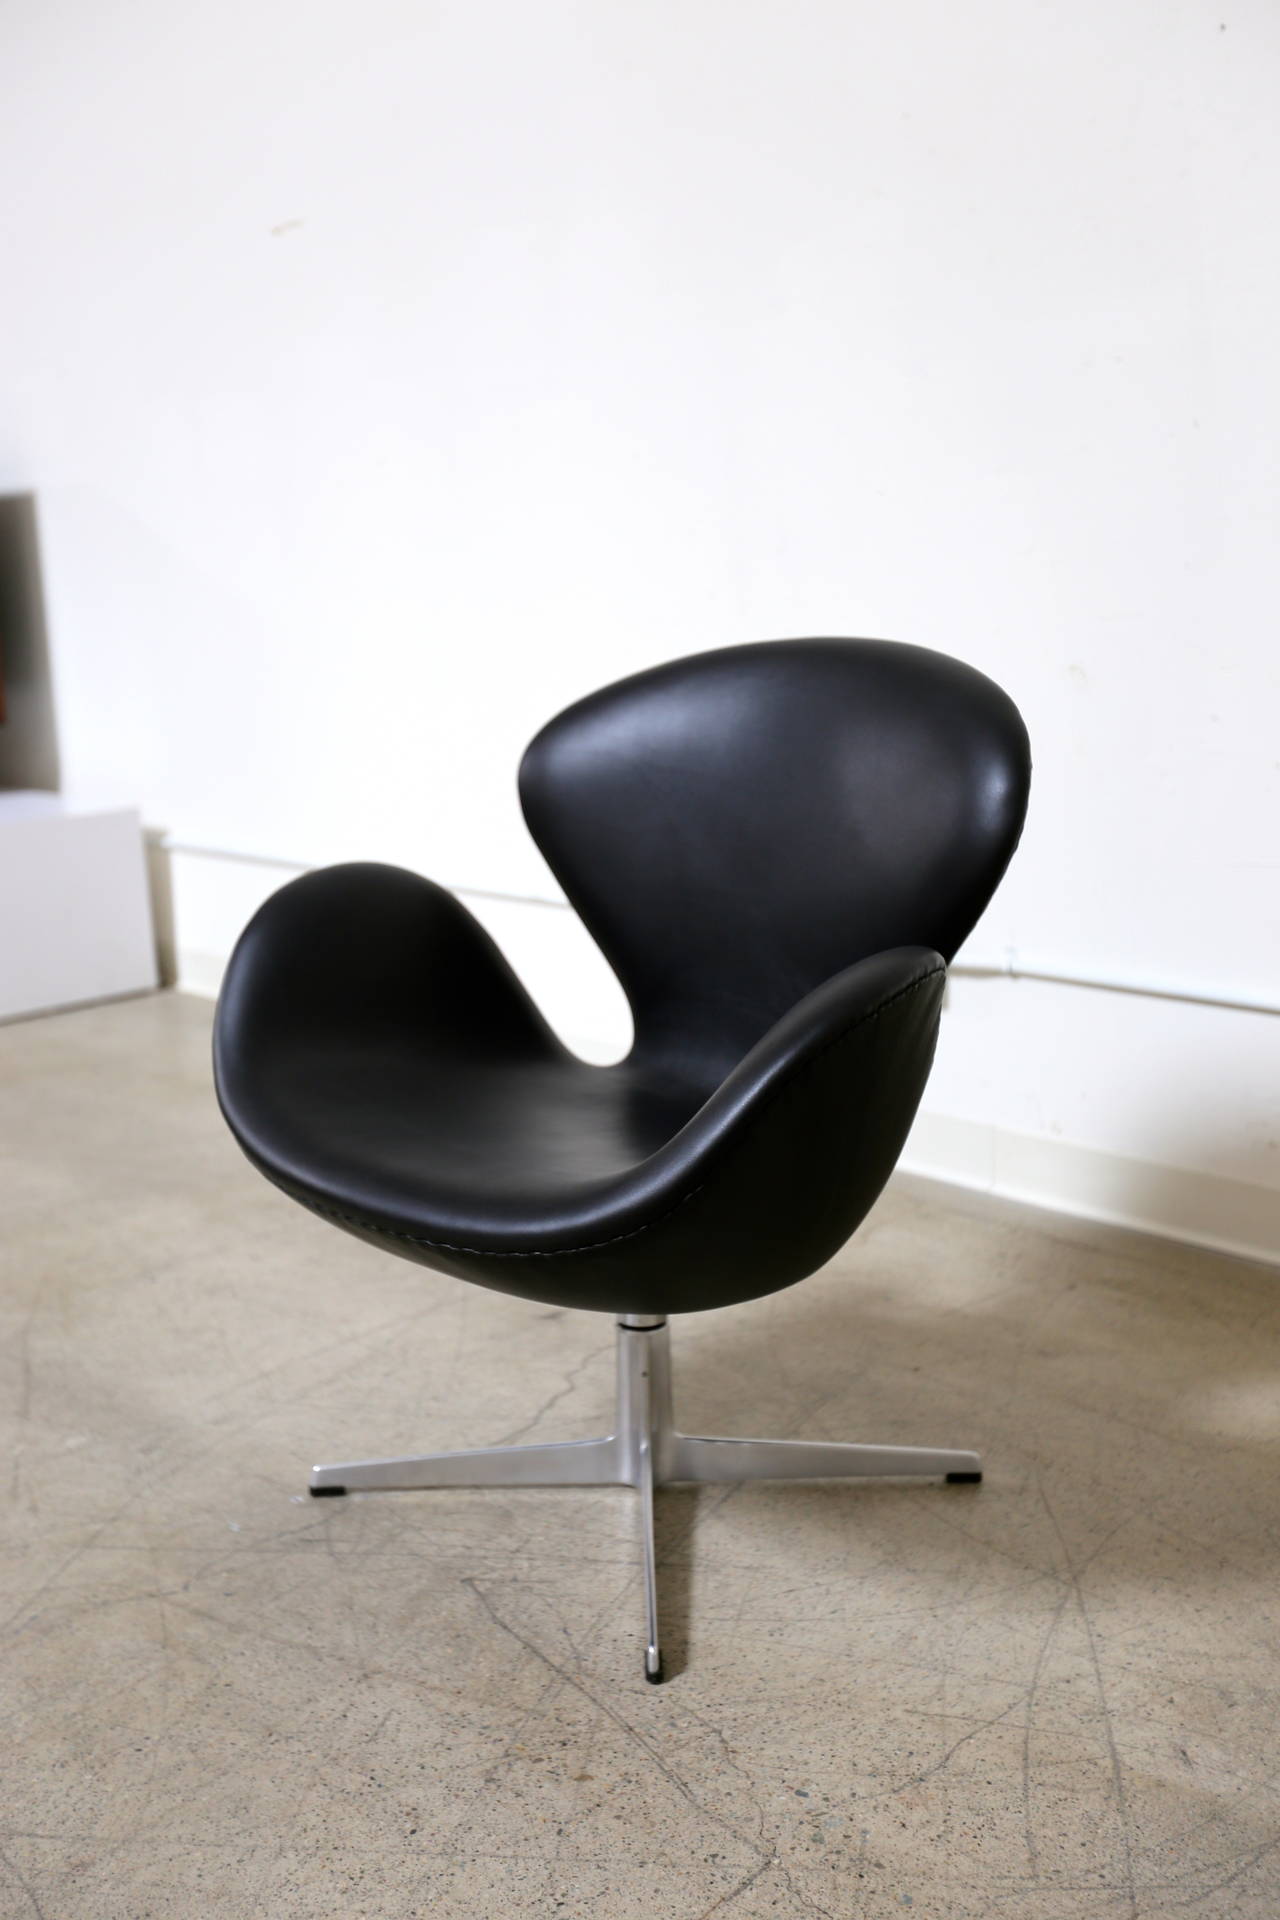 Leather swivel tilt swan chair by Arne Jacobsen for Fritz Hansen.